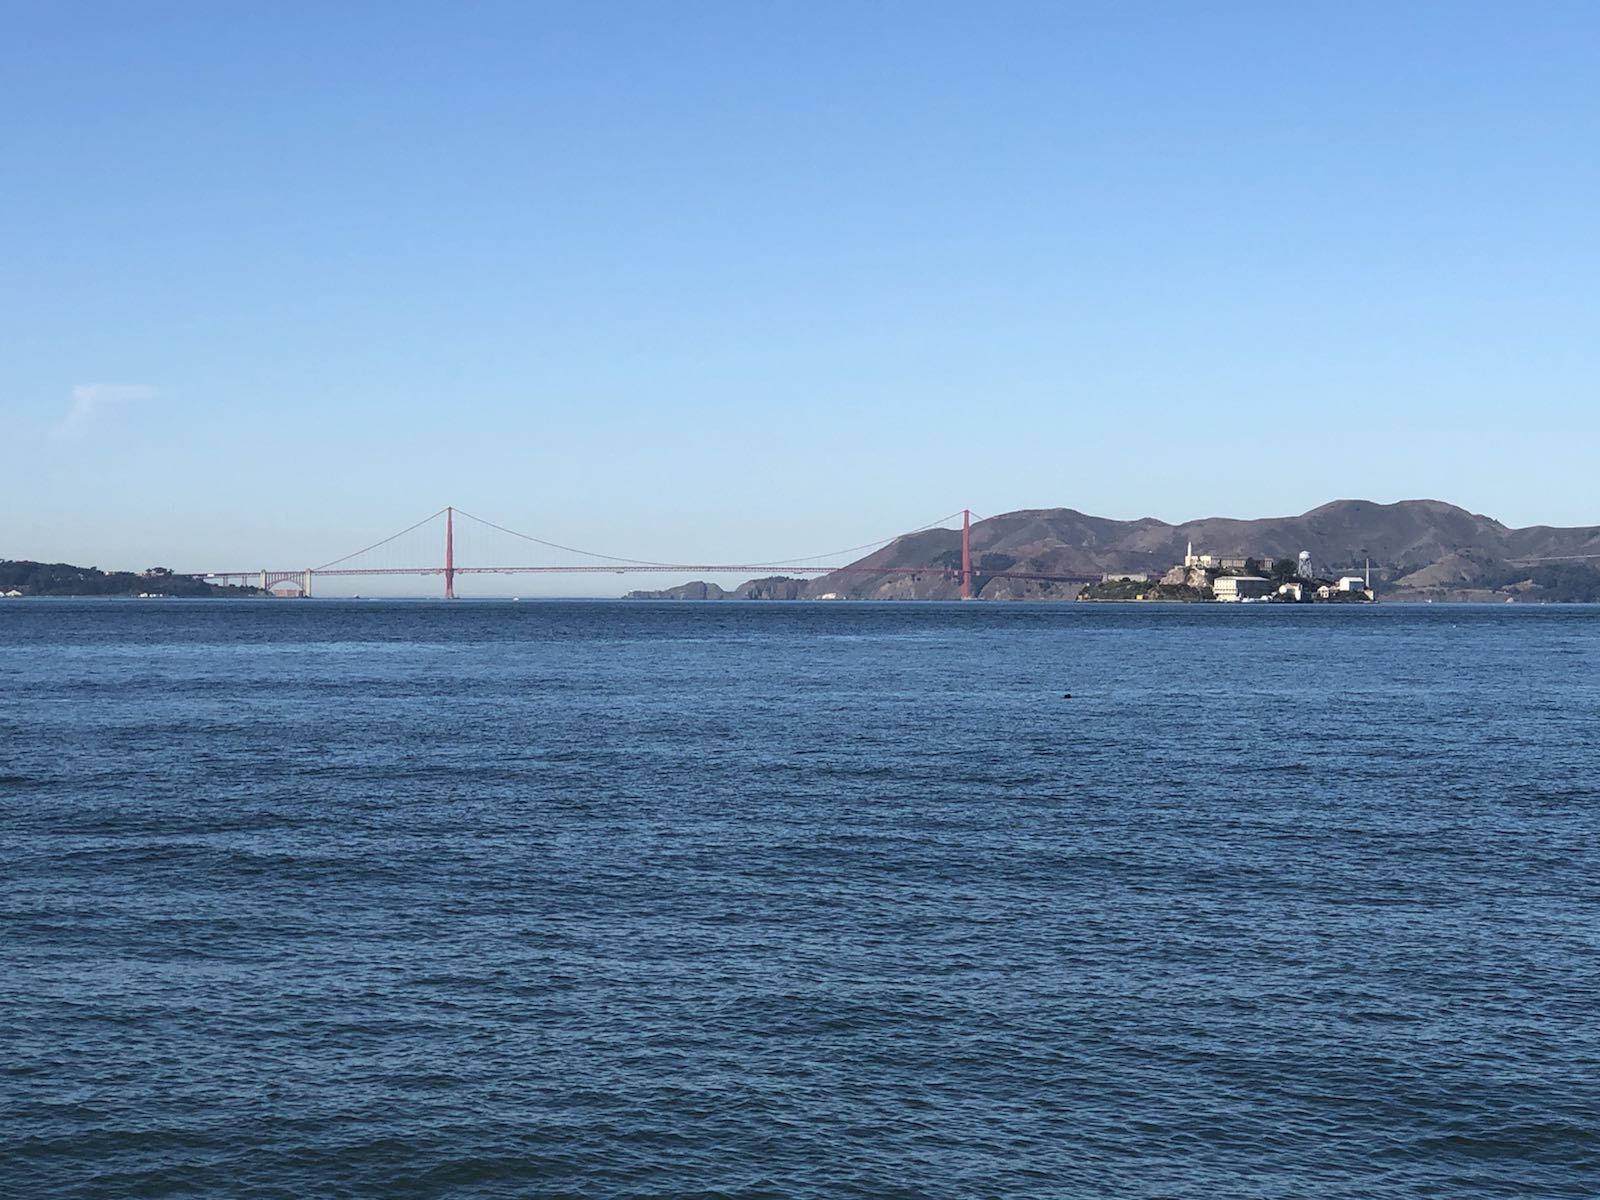 介在湾区大桥中间的一座岛屿，在这个岛屿的北侧能将旧金山城区的样貌一览无